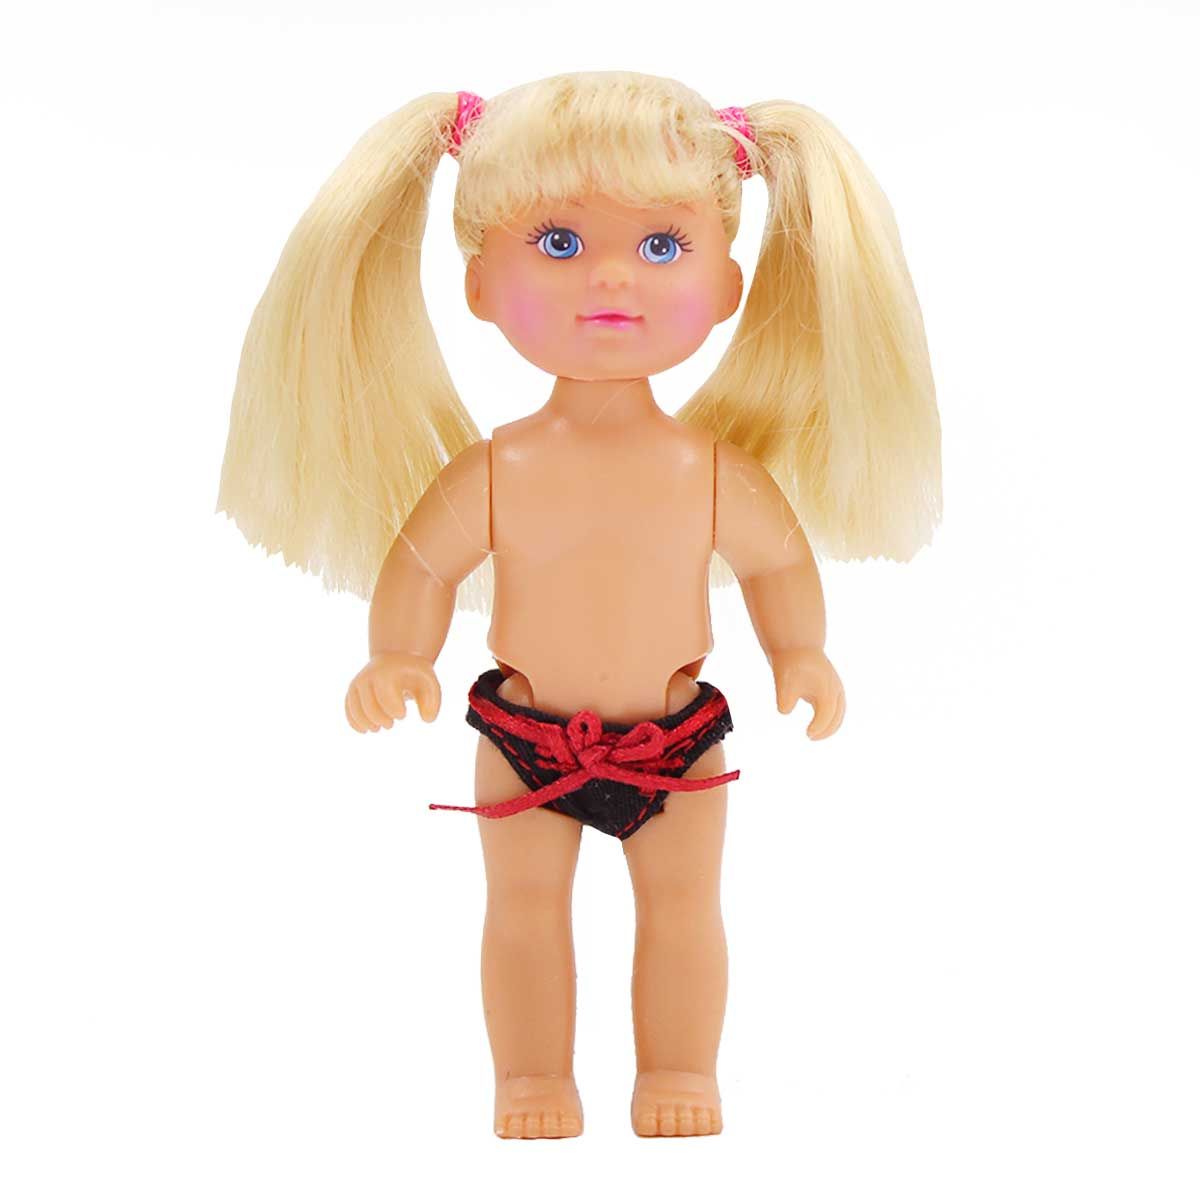 Одежда Dolls Accessories для маленьких кукол ростом 12-16 см Трусики